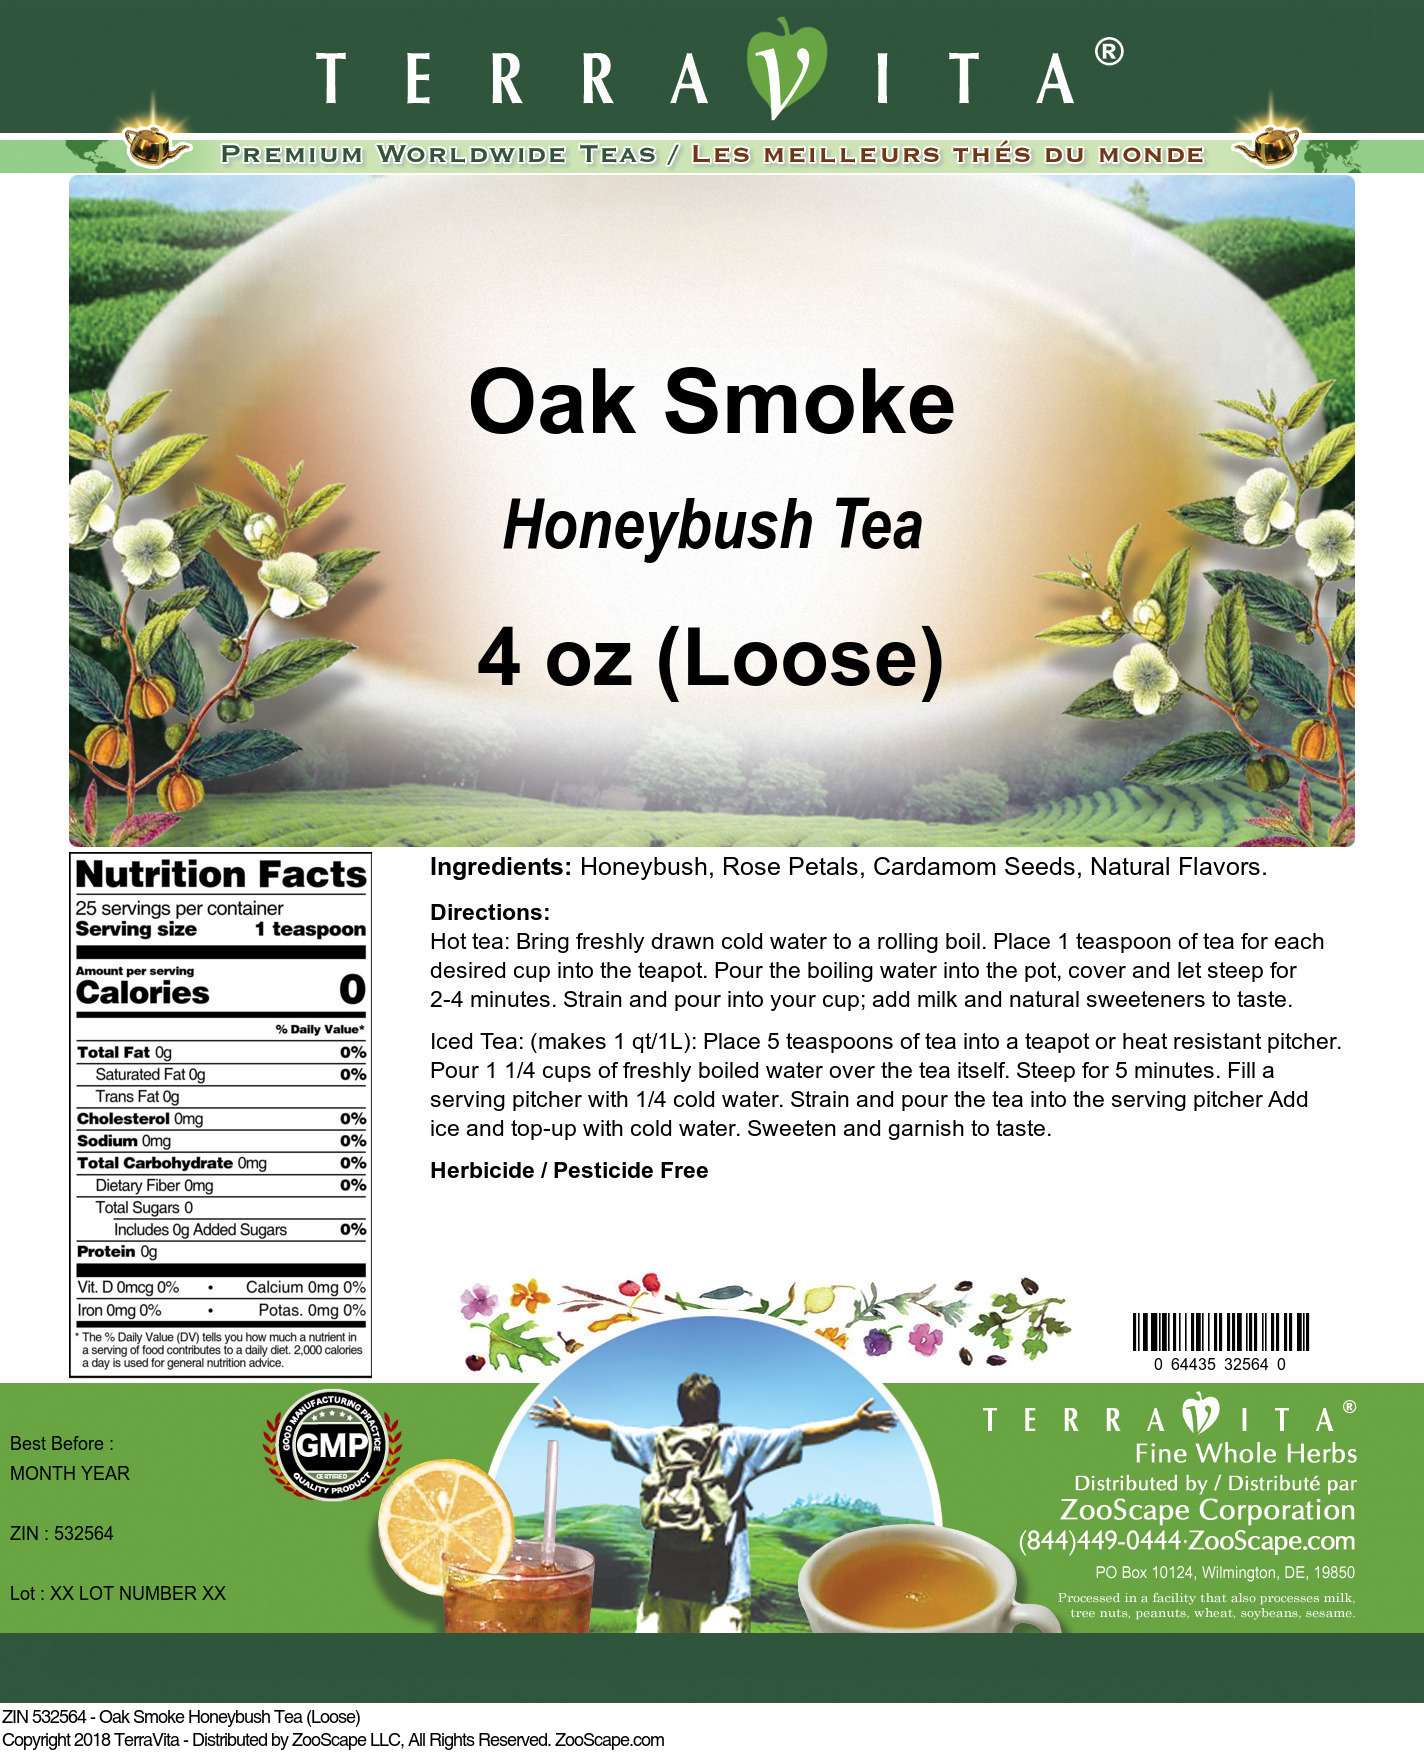 Oak Smoke Honeybush Tea (Loose) - Label